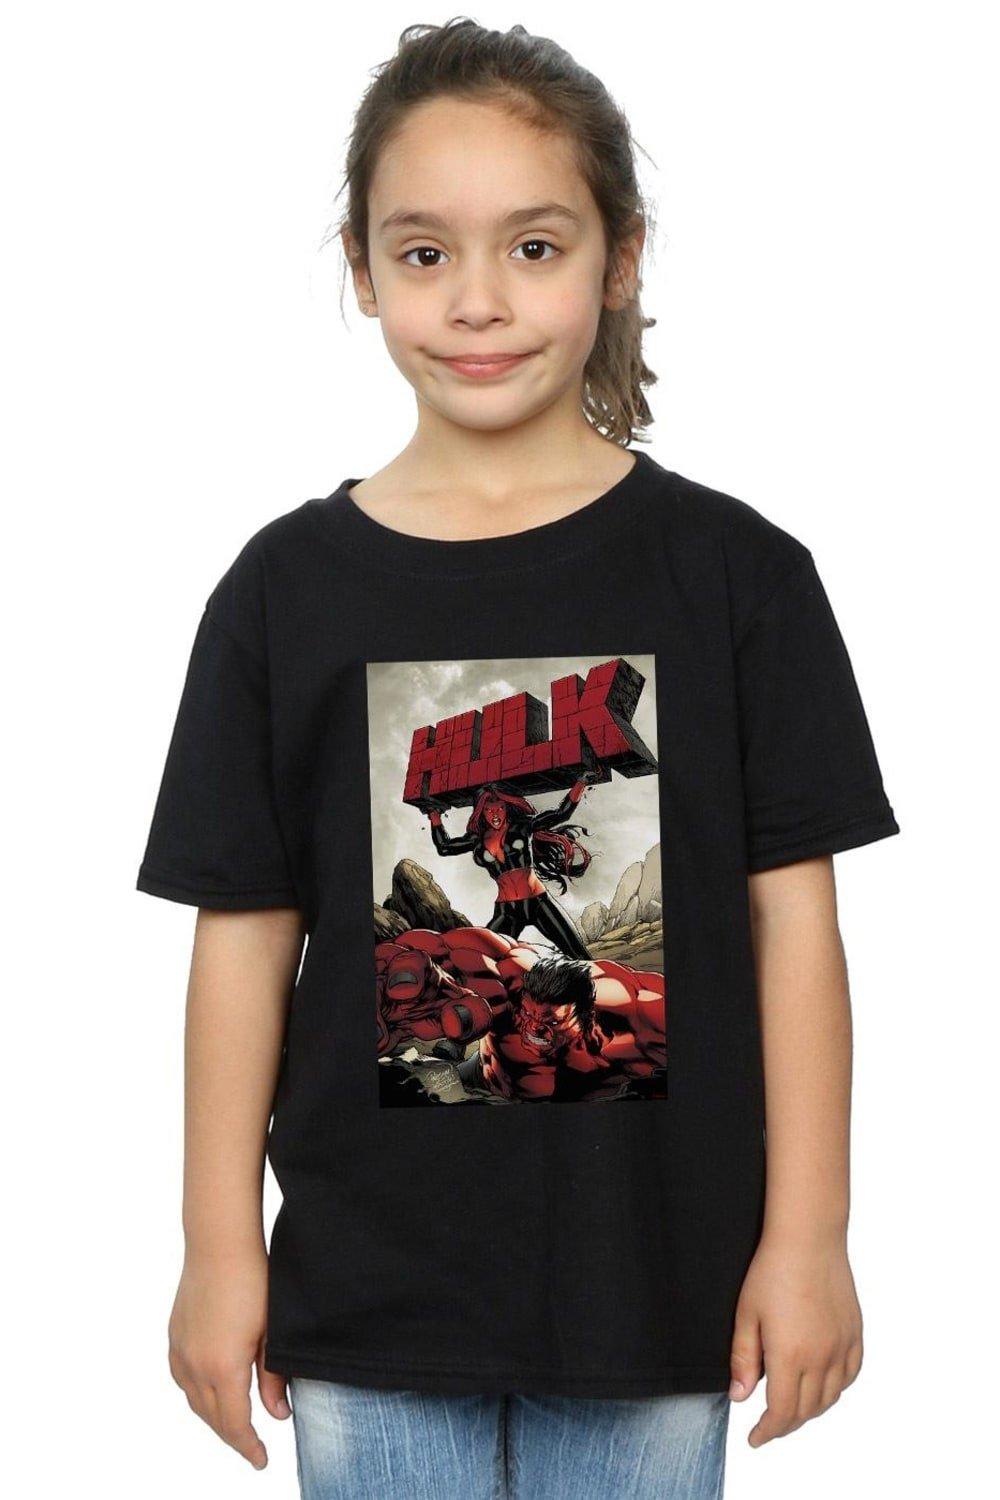 Хлопковая футболка Red Hulk Cover Marvel, черный